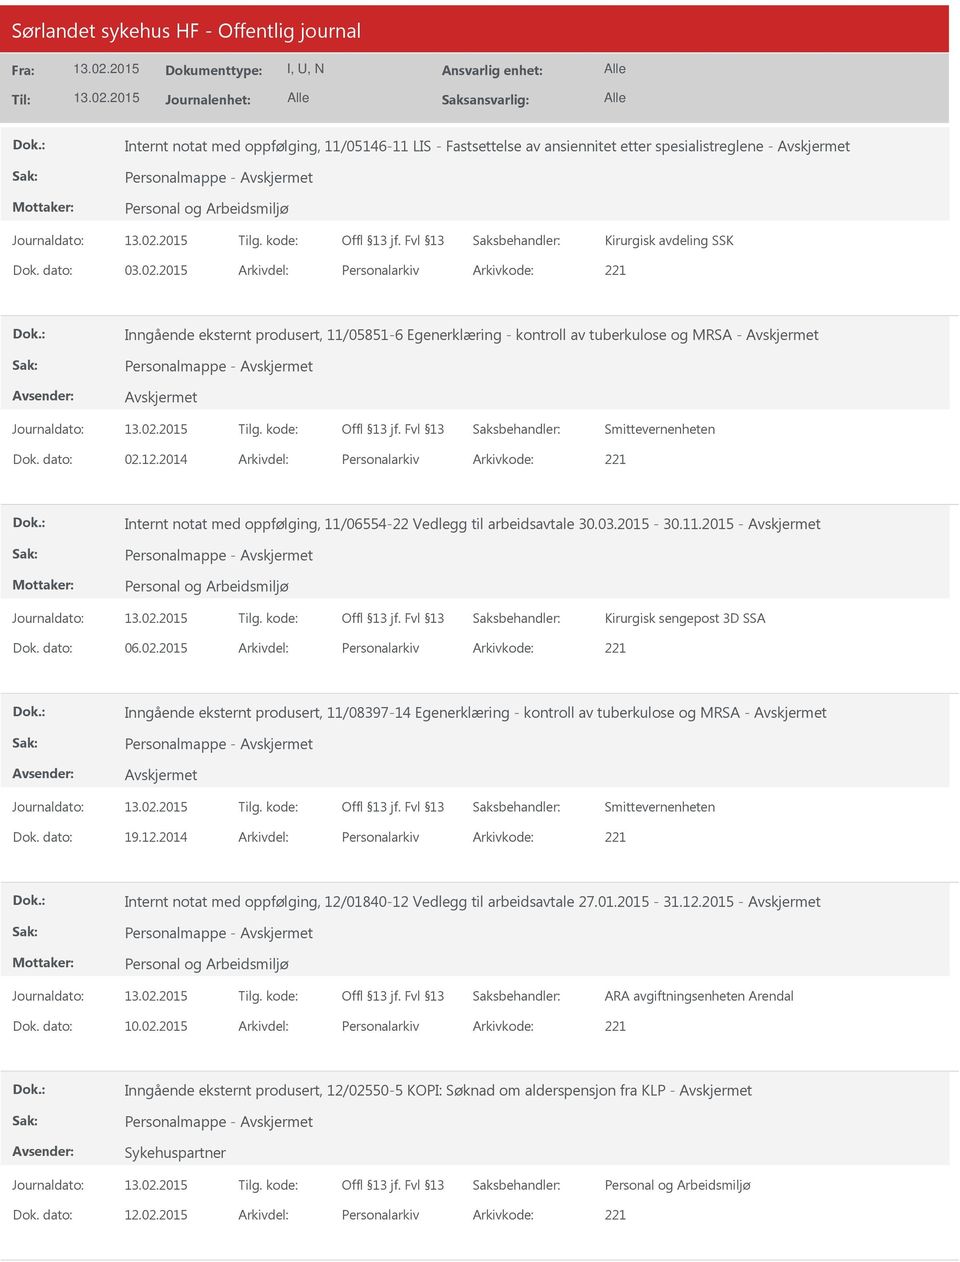 2014 Personalarkiv 221 Internt notat med oppfølging, 11/06554-22 Vedlegg til arbeidsavtale 30.03.2015-30.11.2015 - Personalmappe - Kirurgisk sengepost 3D SSA 06.02.